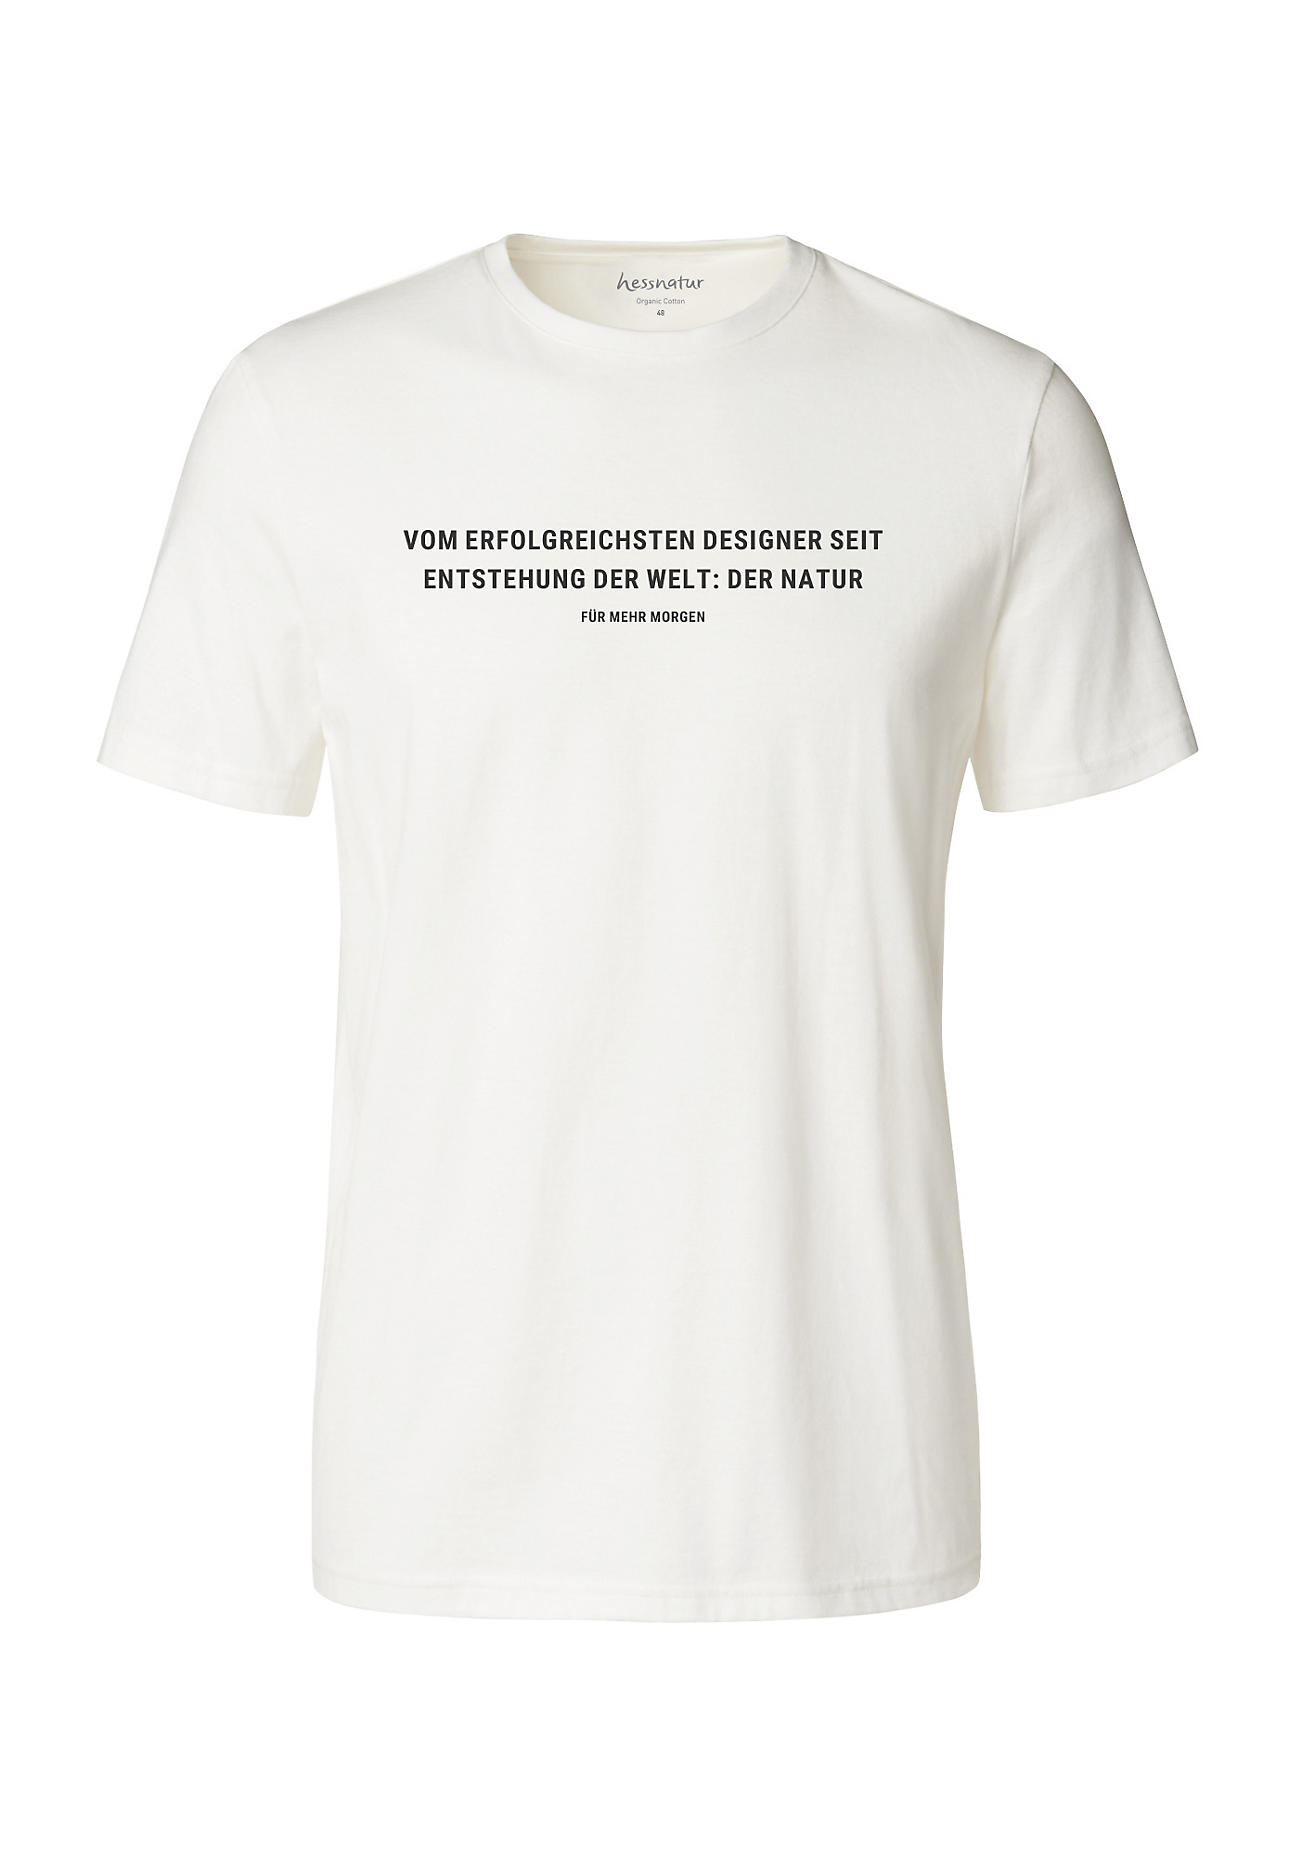 hessnatur Herren Statement Shirt aus Bio-Baumwolle - weiß Grösse50 von hessnatur